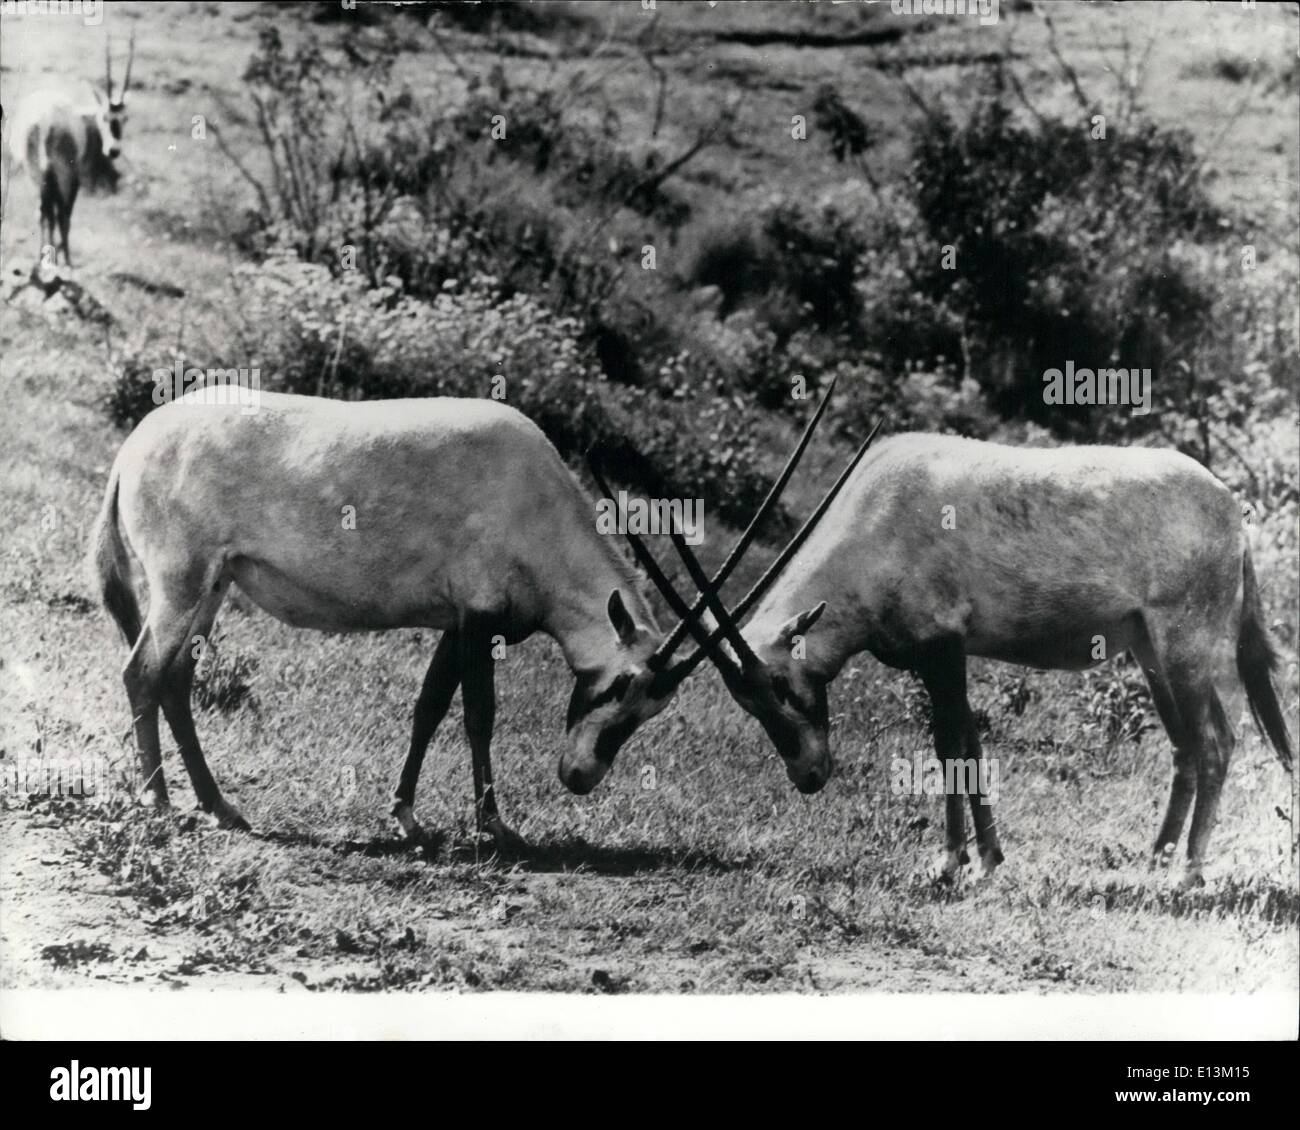 2. März 2012 - Kreuzung Hörner: Diese zwei arabische Oryx-Antilope sind  gesehen Kreuzung Hörner, als ob im Kampf gesperrt. Die kleinen cremeweißen  Antilope mit ihren langen Korkenzieher wie Hörner sind jetzt sehr